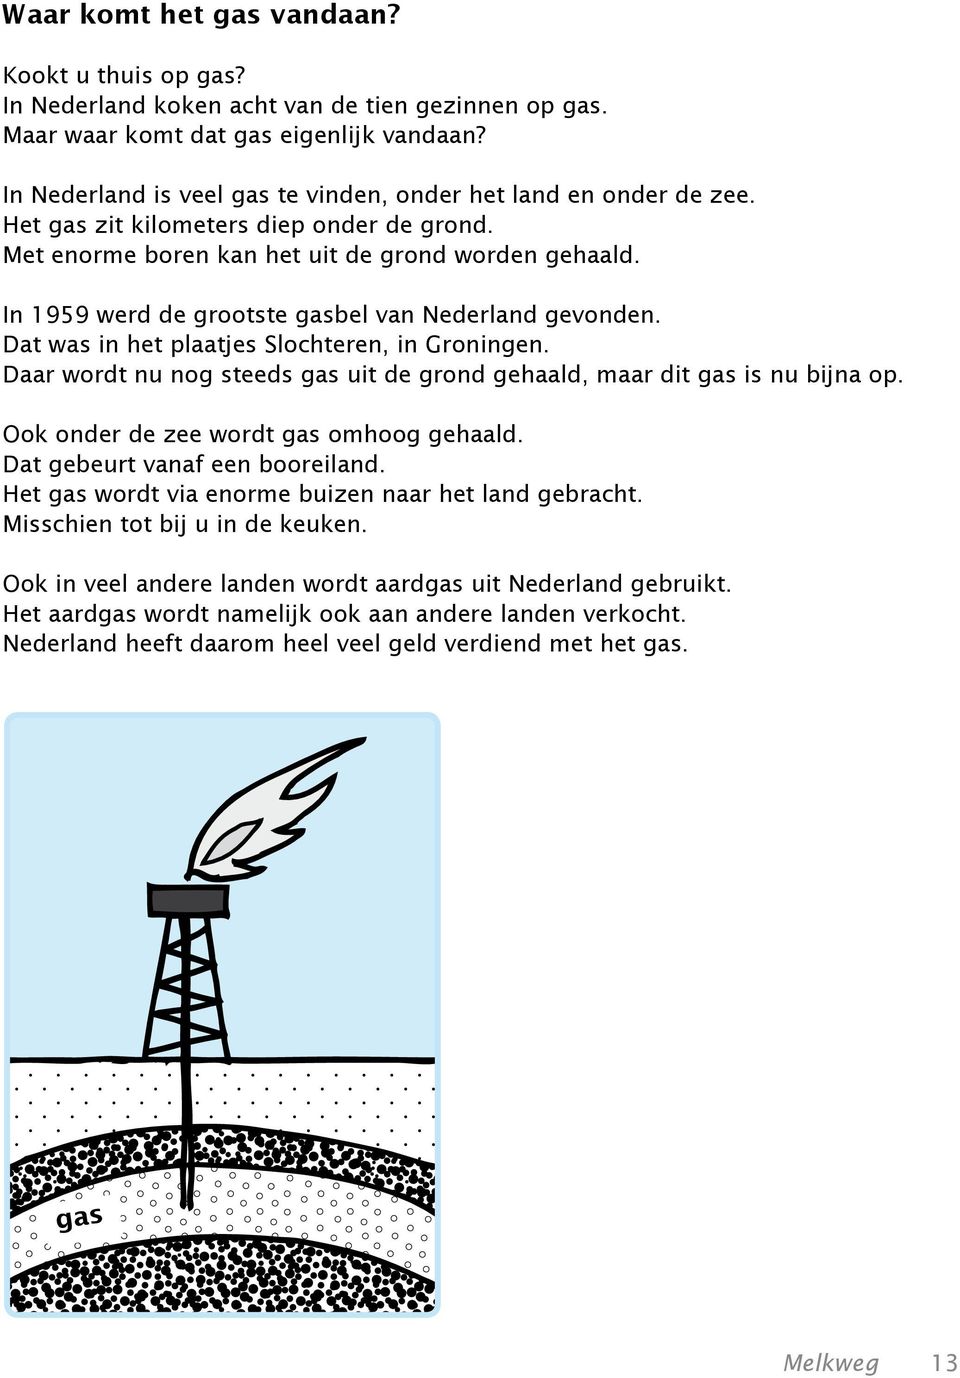 In 1959 werd de grootste gasbel van Nederland gevonden. Dat was in het plaatjes Slochteren, in Groningen. Daar wordt nu nog steeds gas uit de grond gehaald, maar dit gas is nu bijna op.